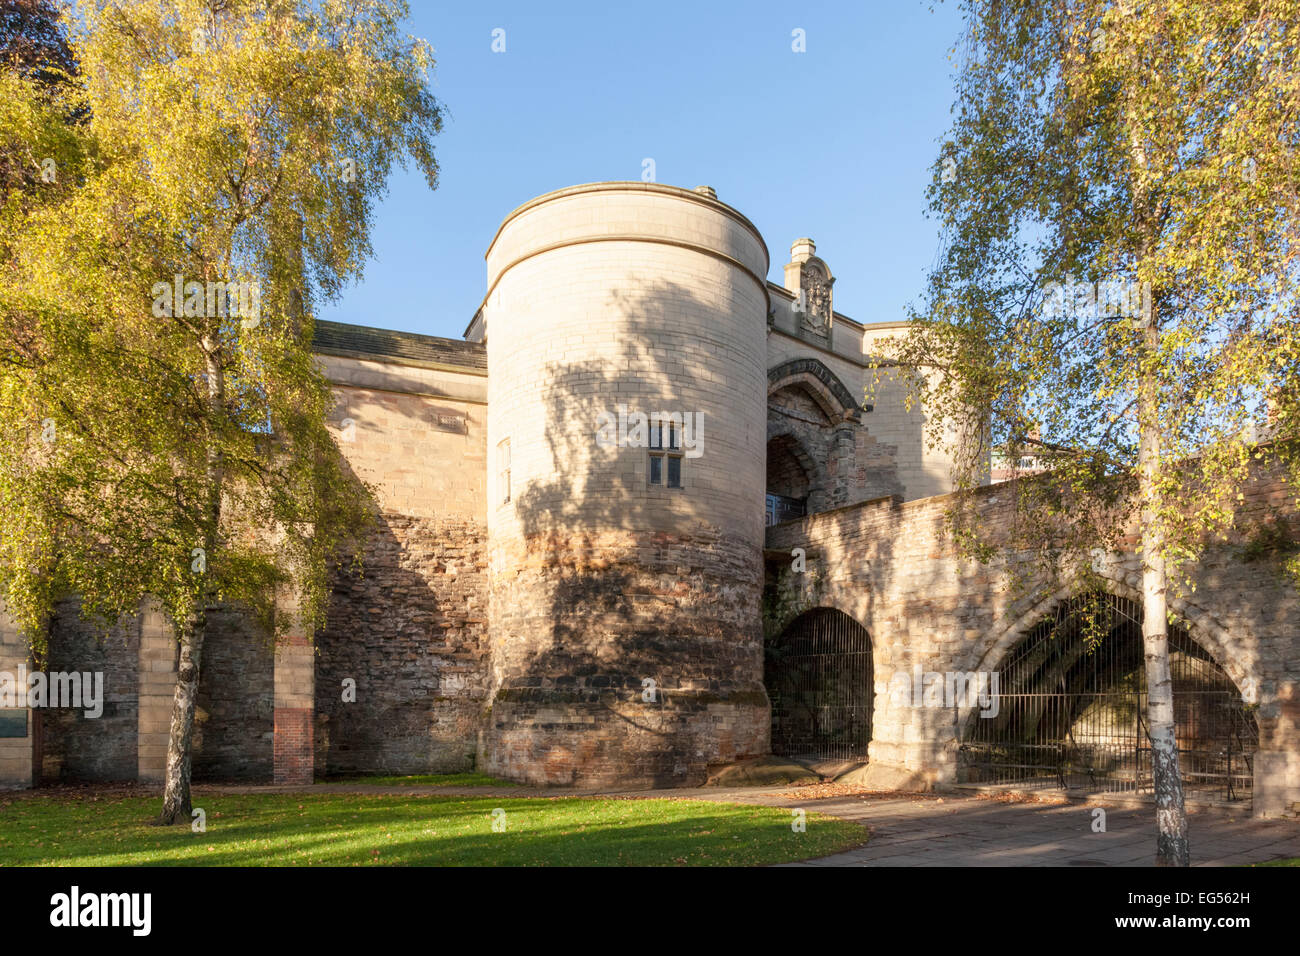 English castles: The Gate House and bridge, Nottingham Castle, Nottingham, England, UK Stock Photo